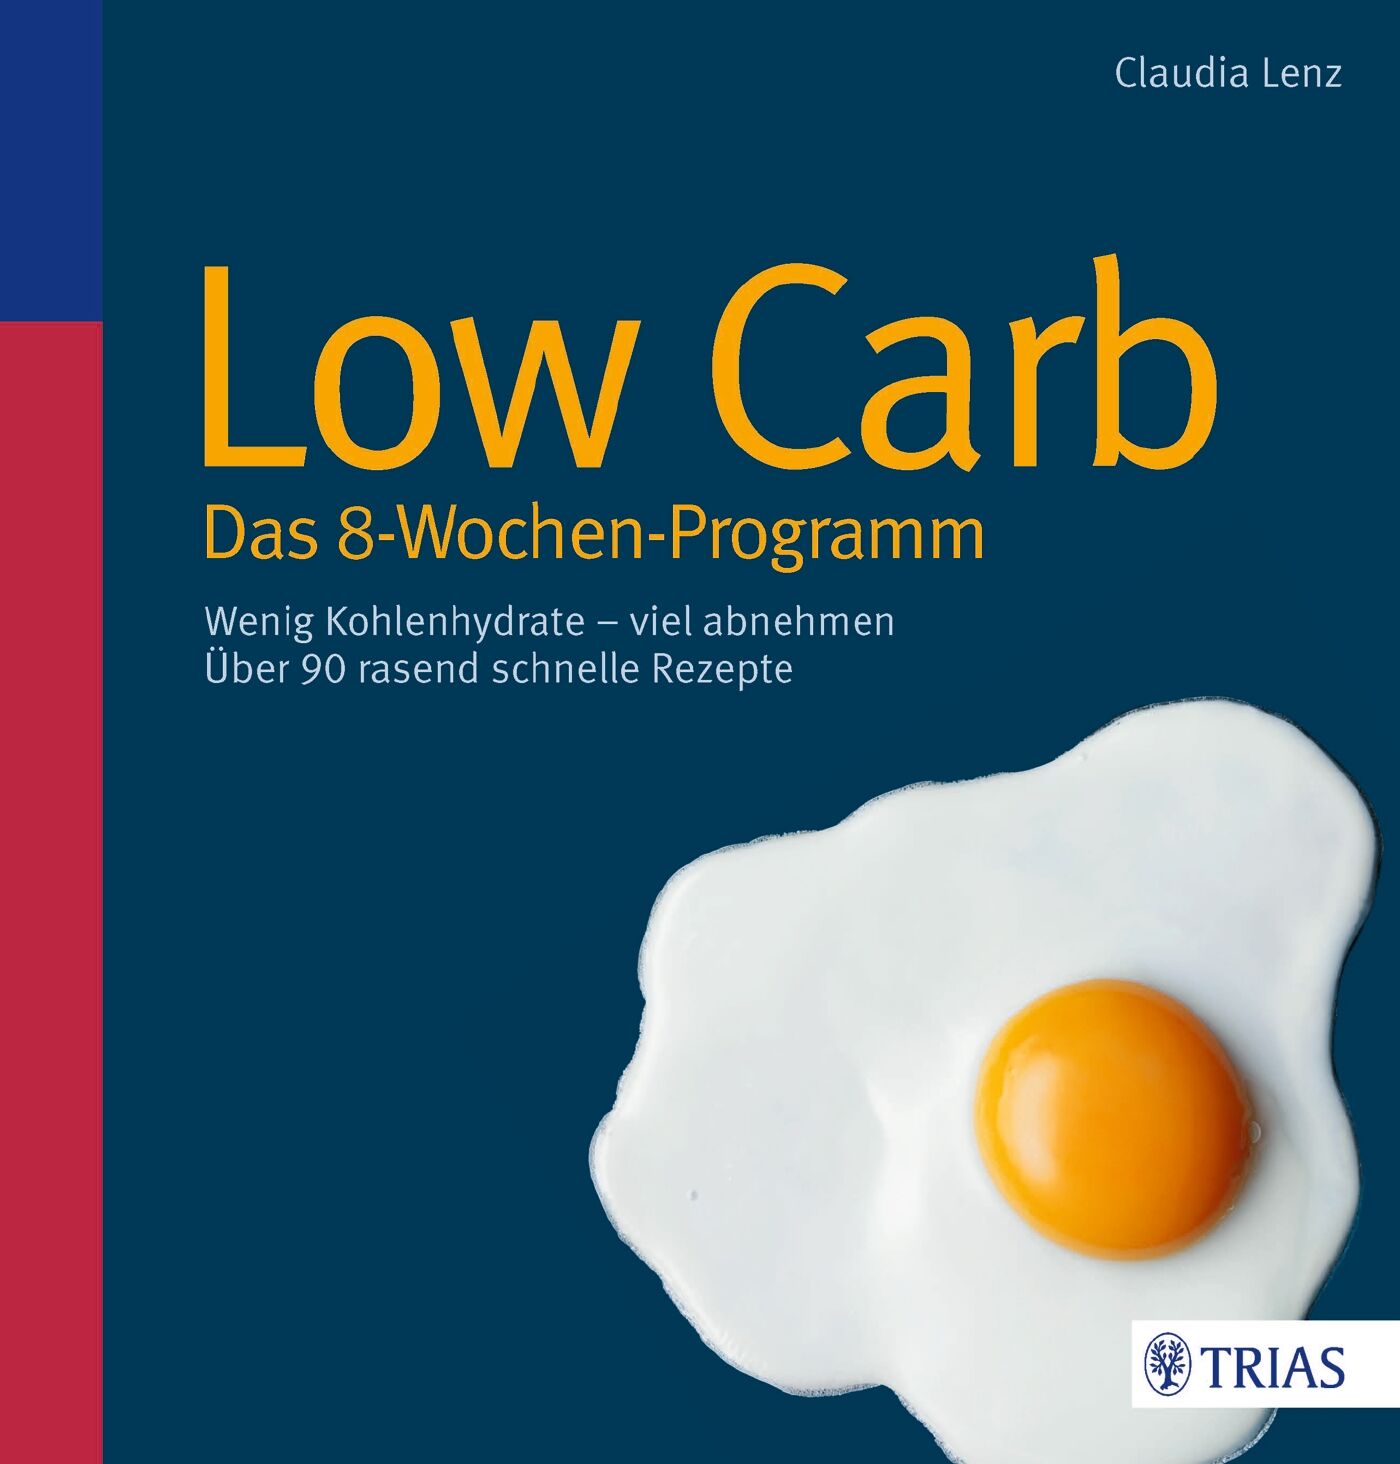 Low Carb - Das 8-Wochen-Programm, 9783830467090